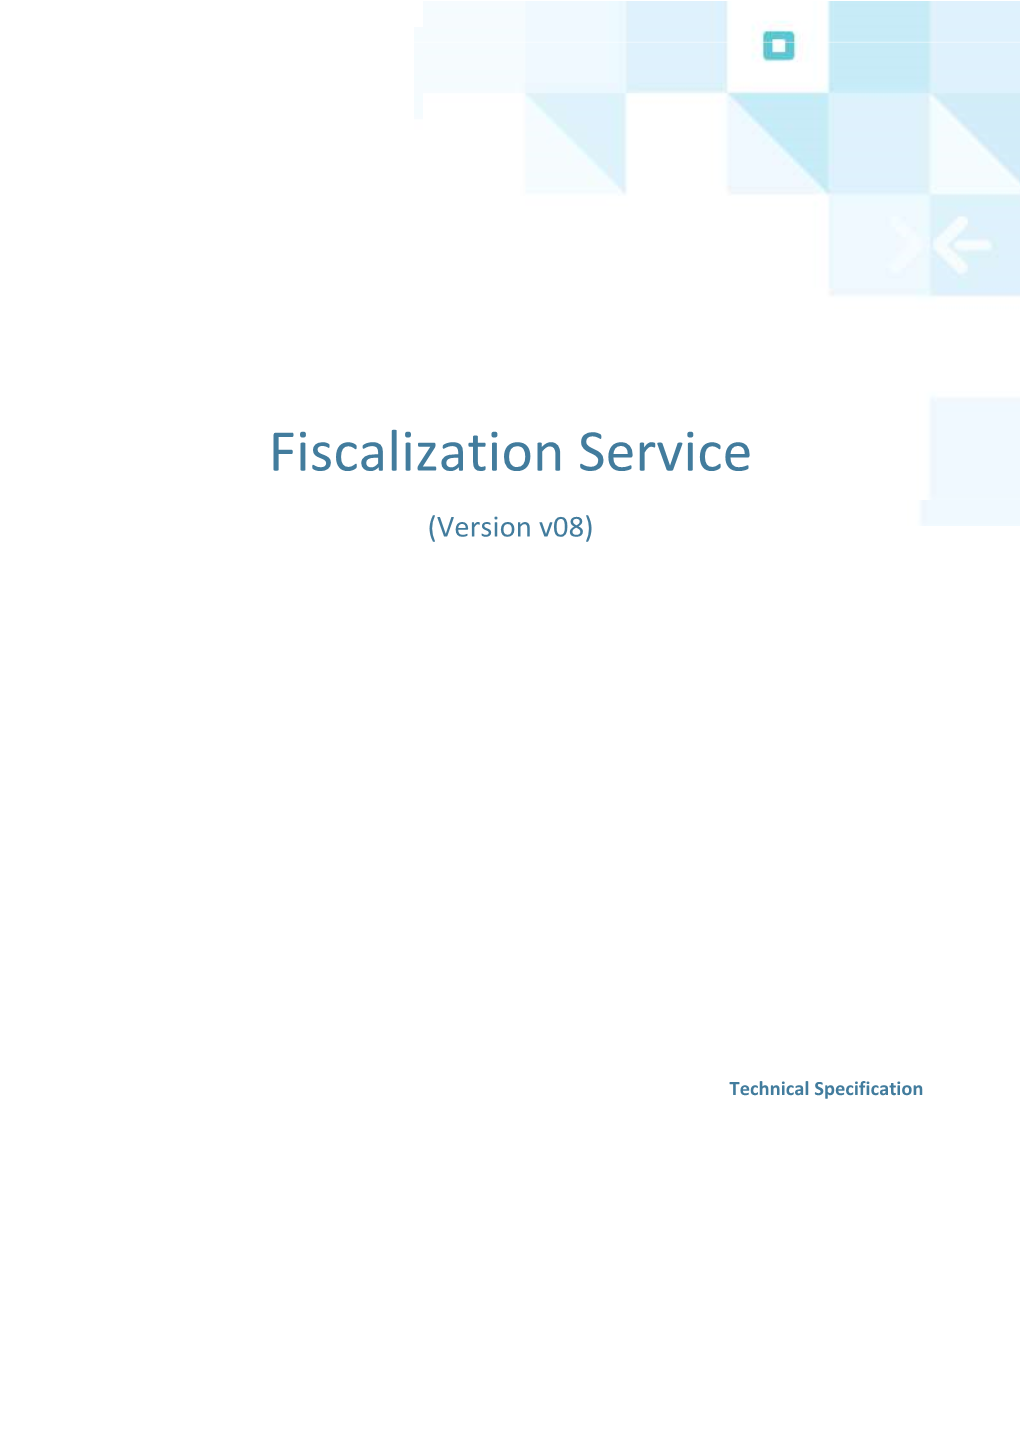 Fiscalization Service (Version V08)